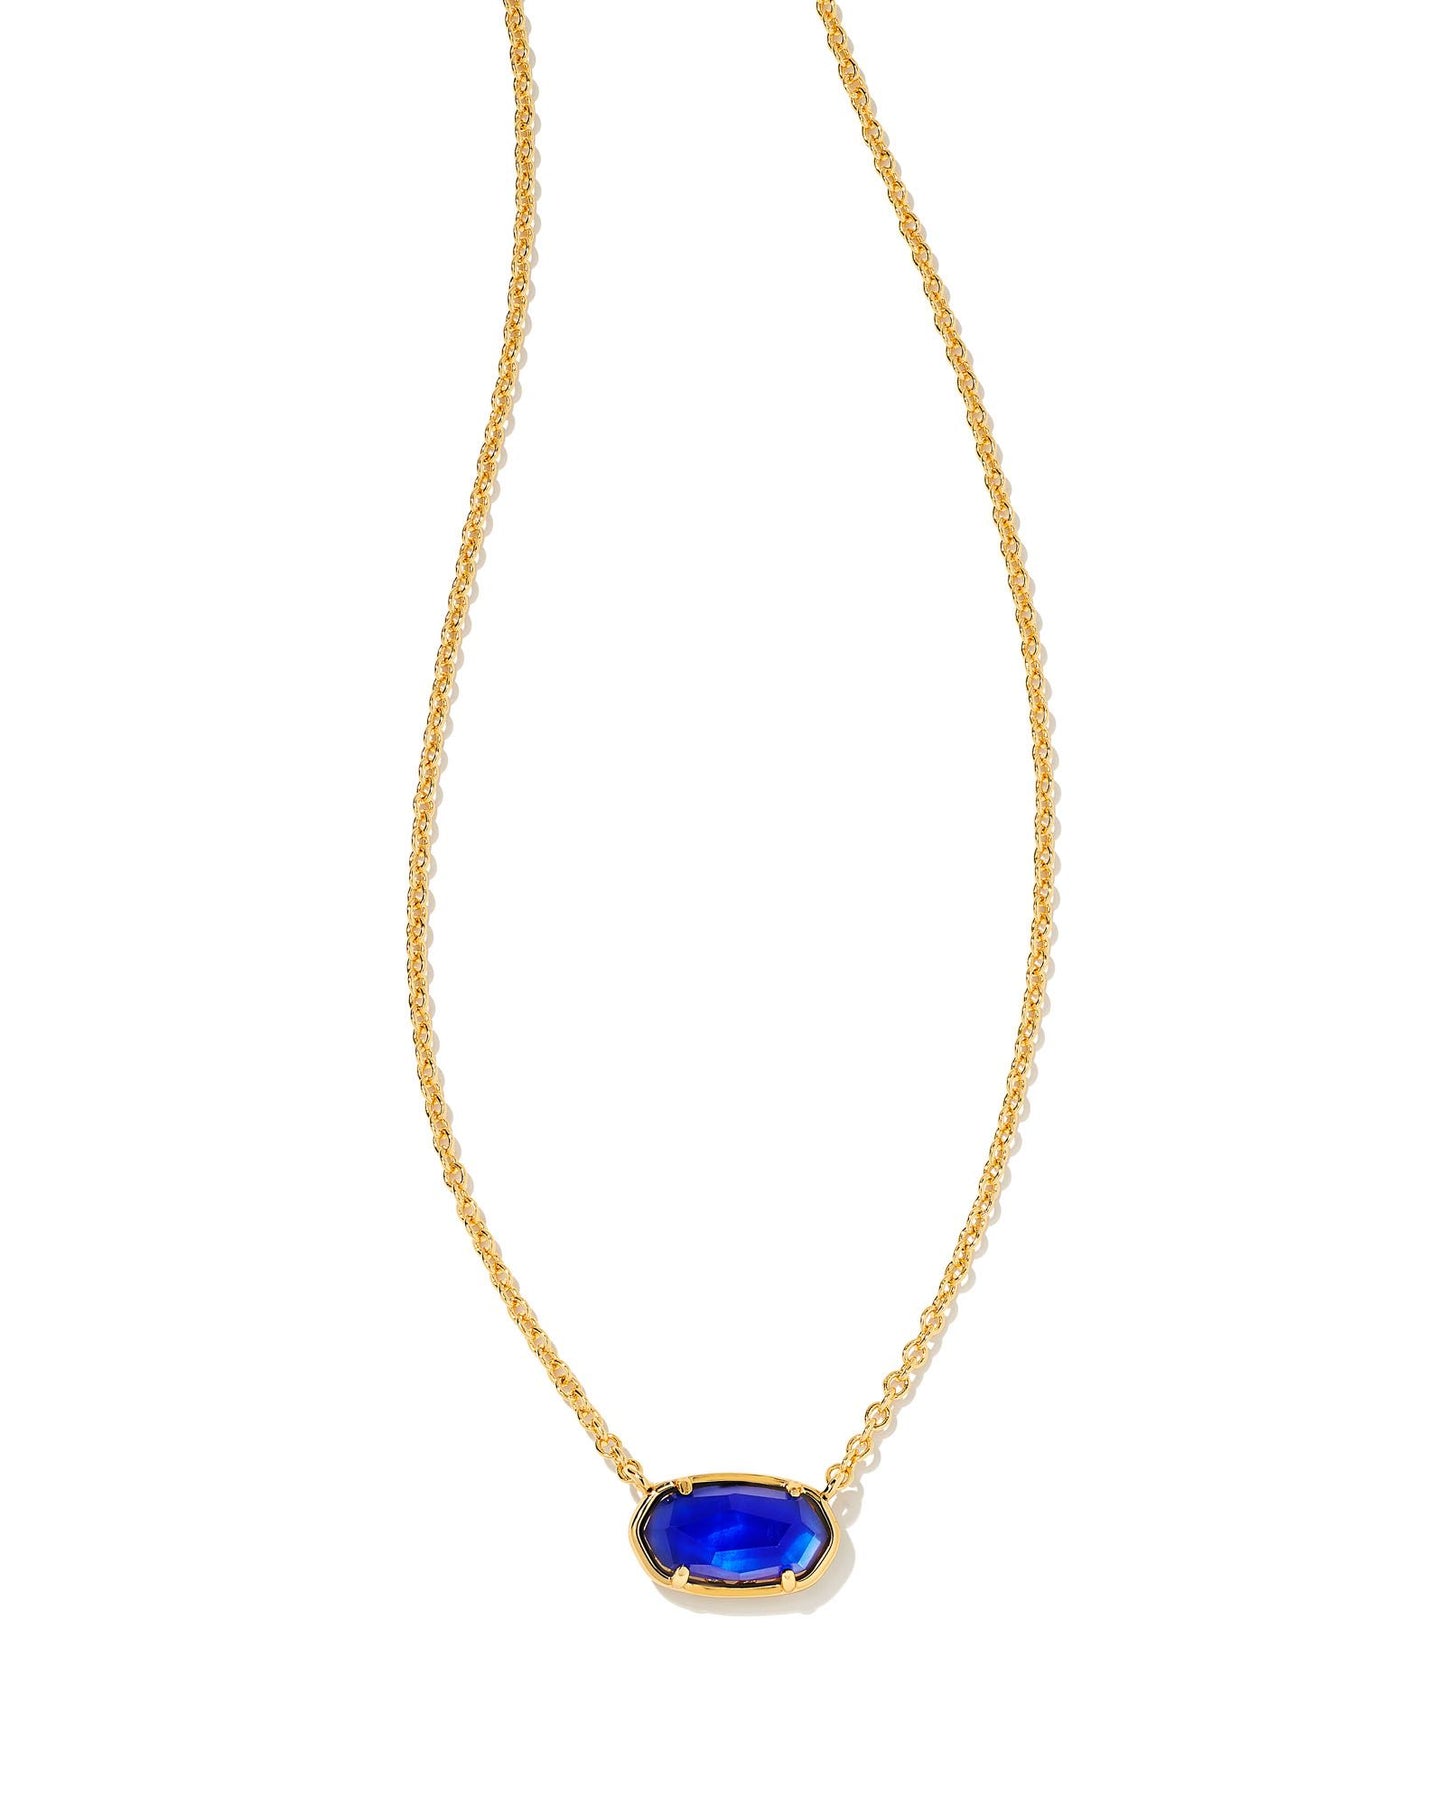 Grayson Short Necklace | Cobalt Blue Illusion